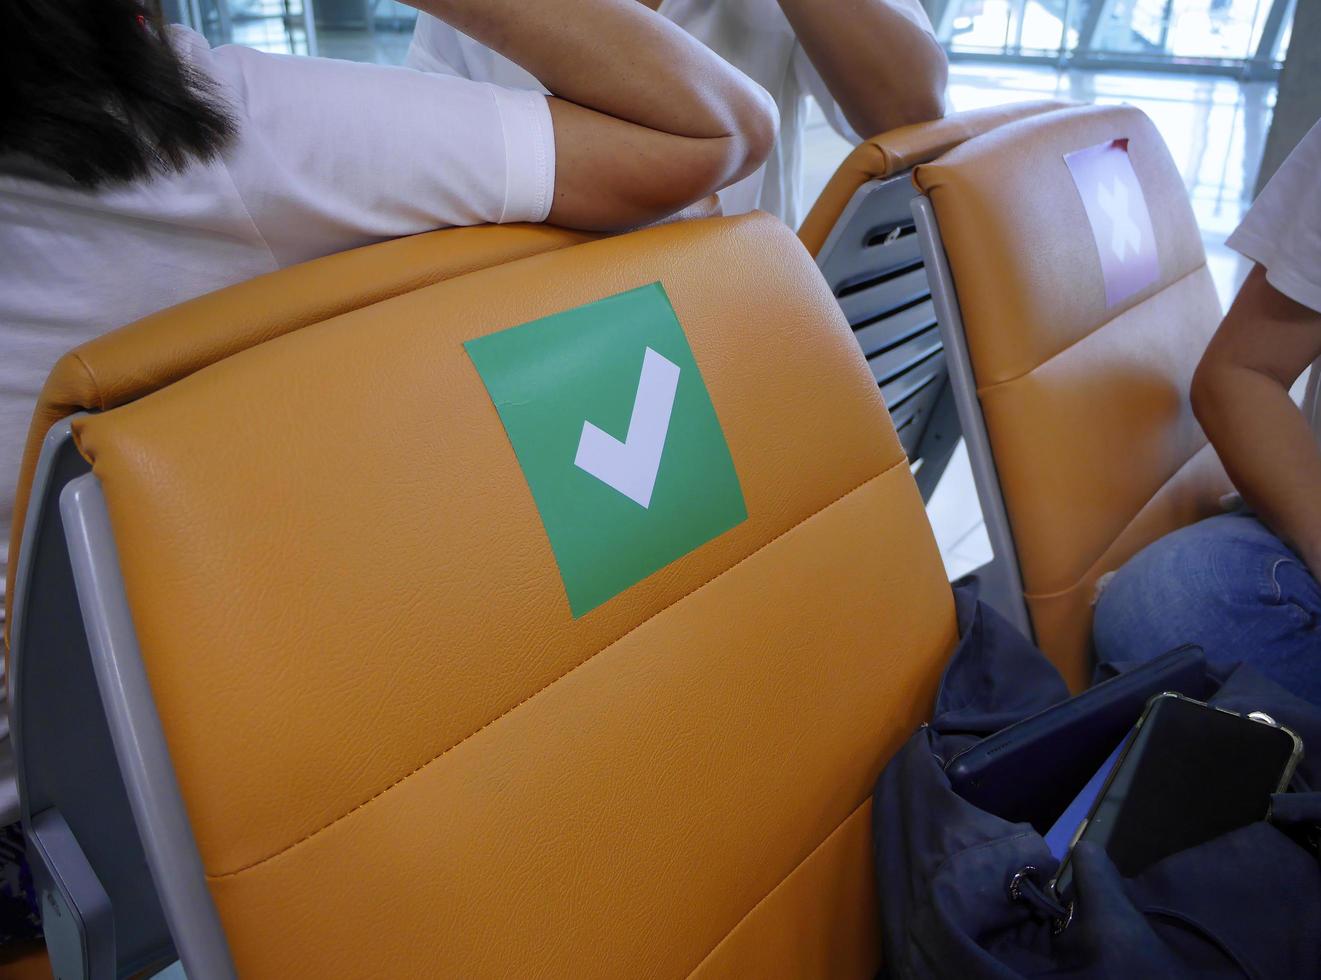 vrouwelijke reiziger zit met persoonlijke tas en brengt vrije tijd door met kletsen tijdens het wachten op het instappen in de luchthavenpoort foto